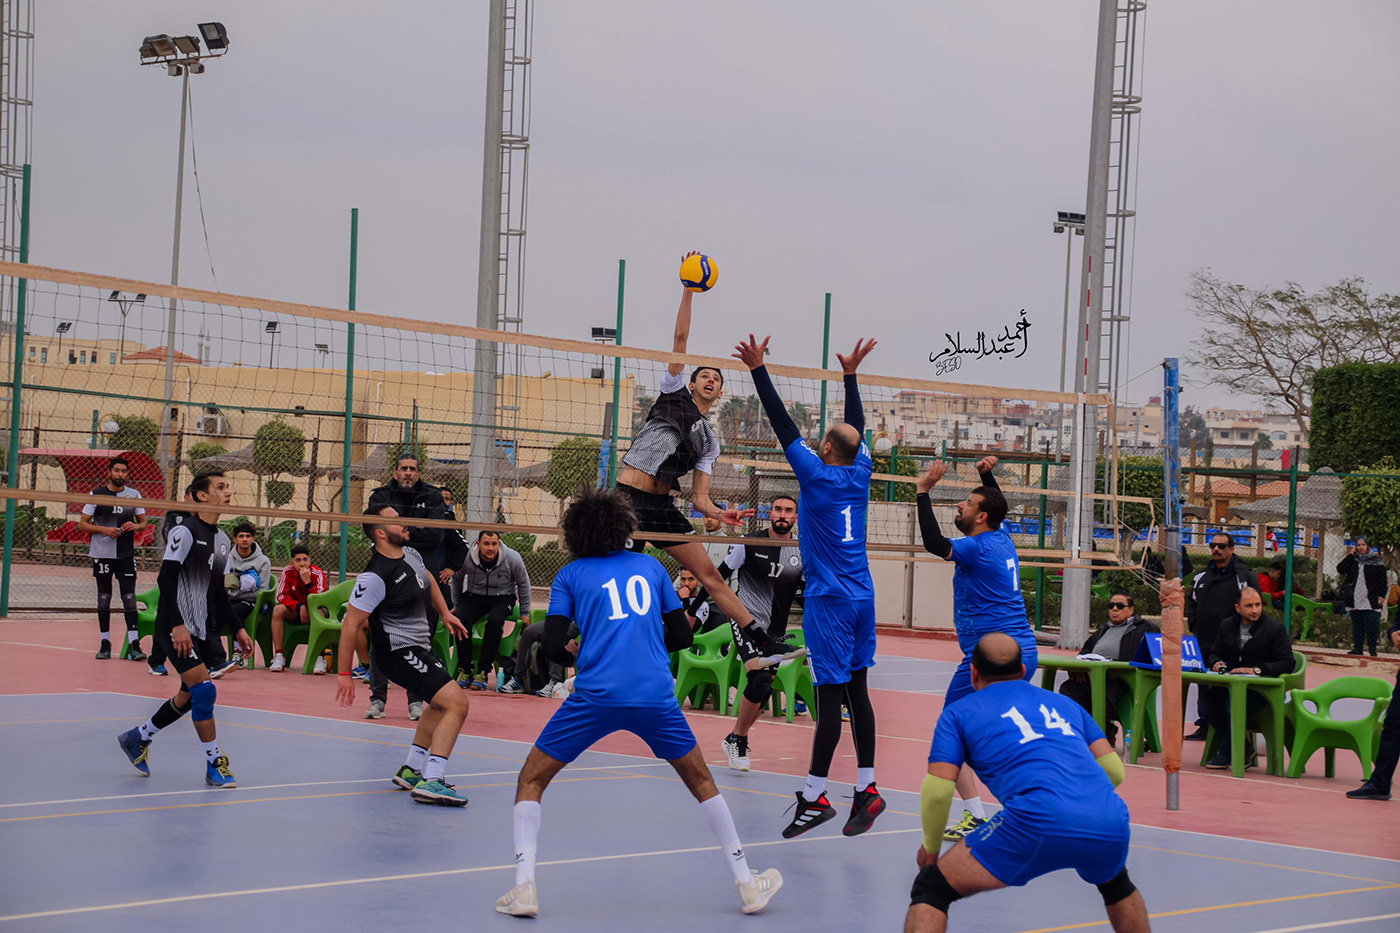 ball handball photo Photography  photoshoot sport sports photography